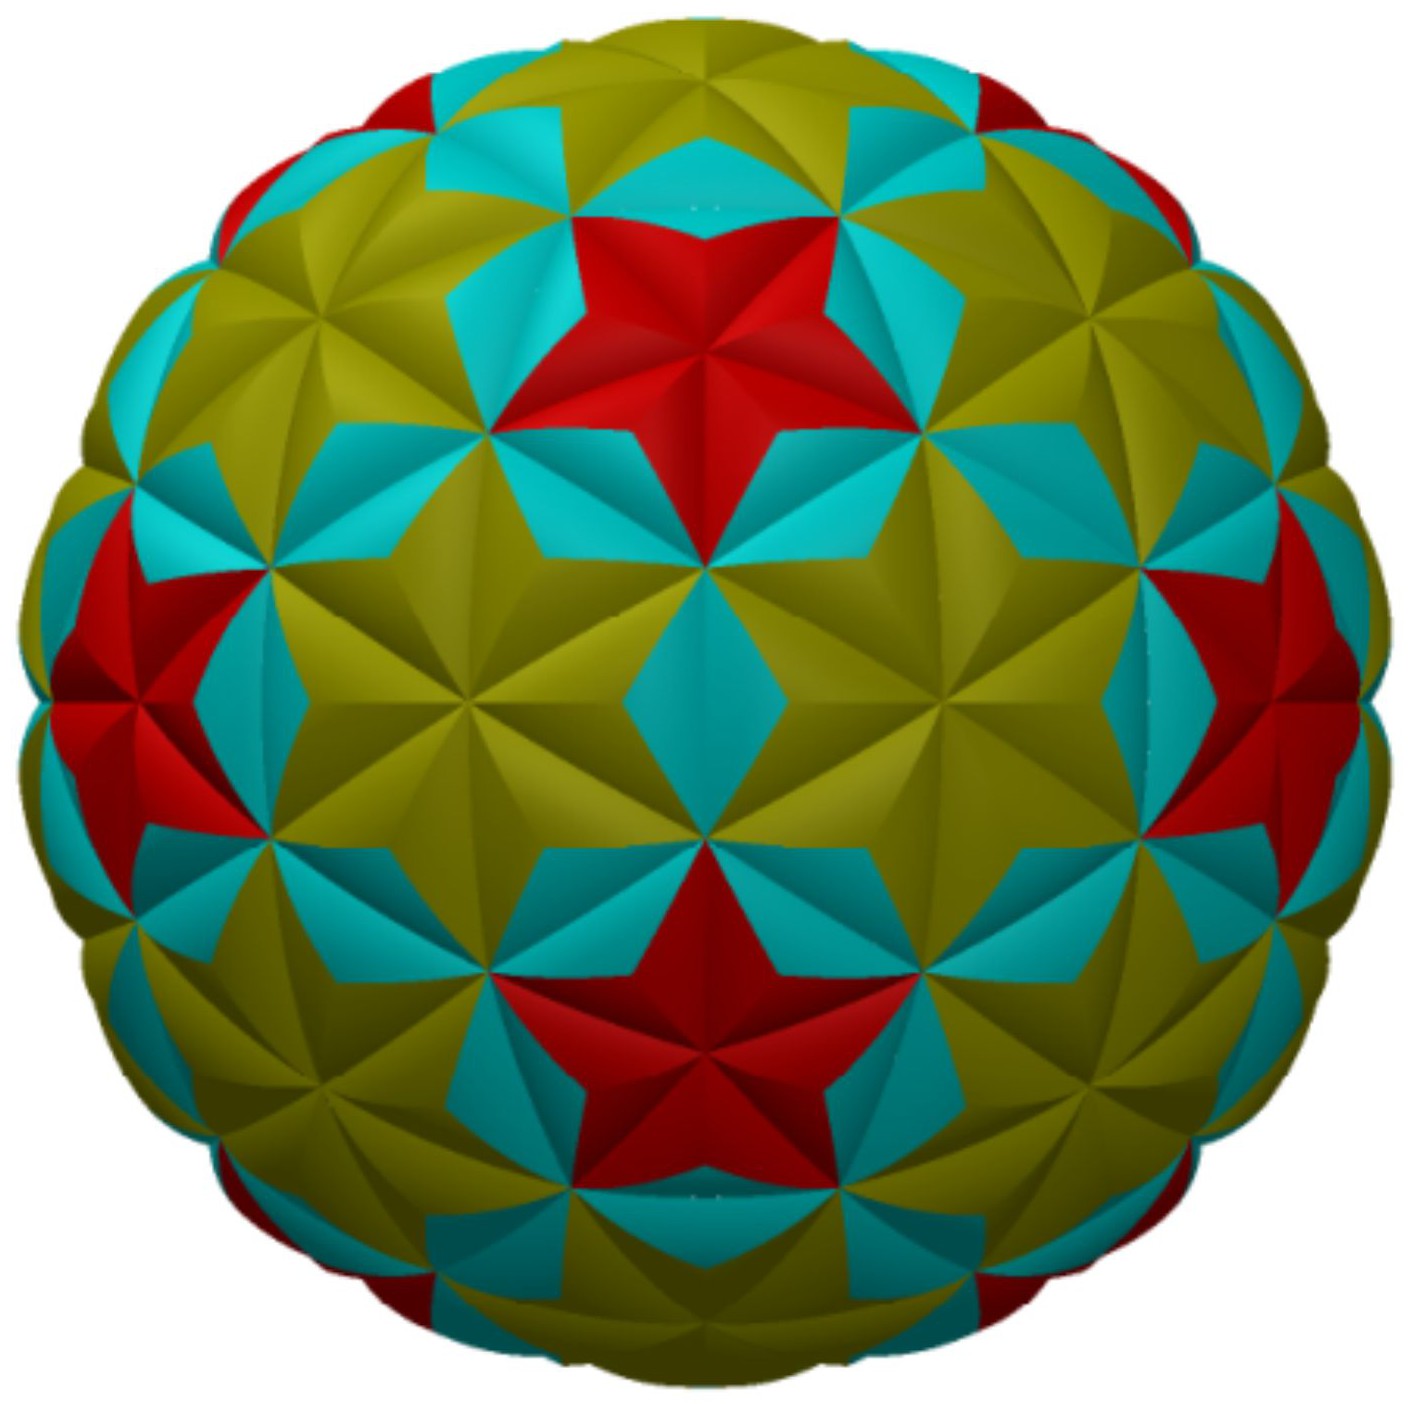 cn305308295s_球面五角星型立体压花网球(石墨烯材质)有效